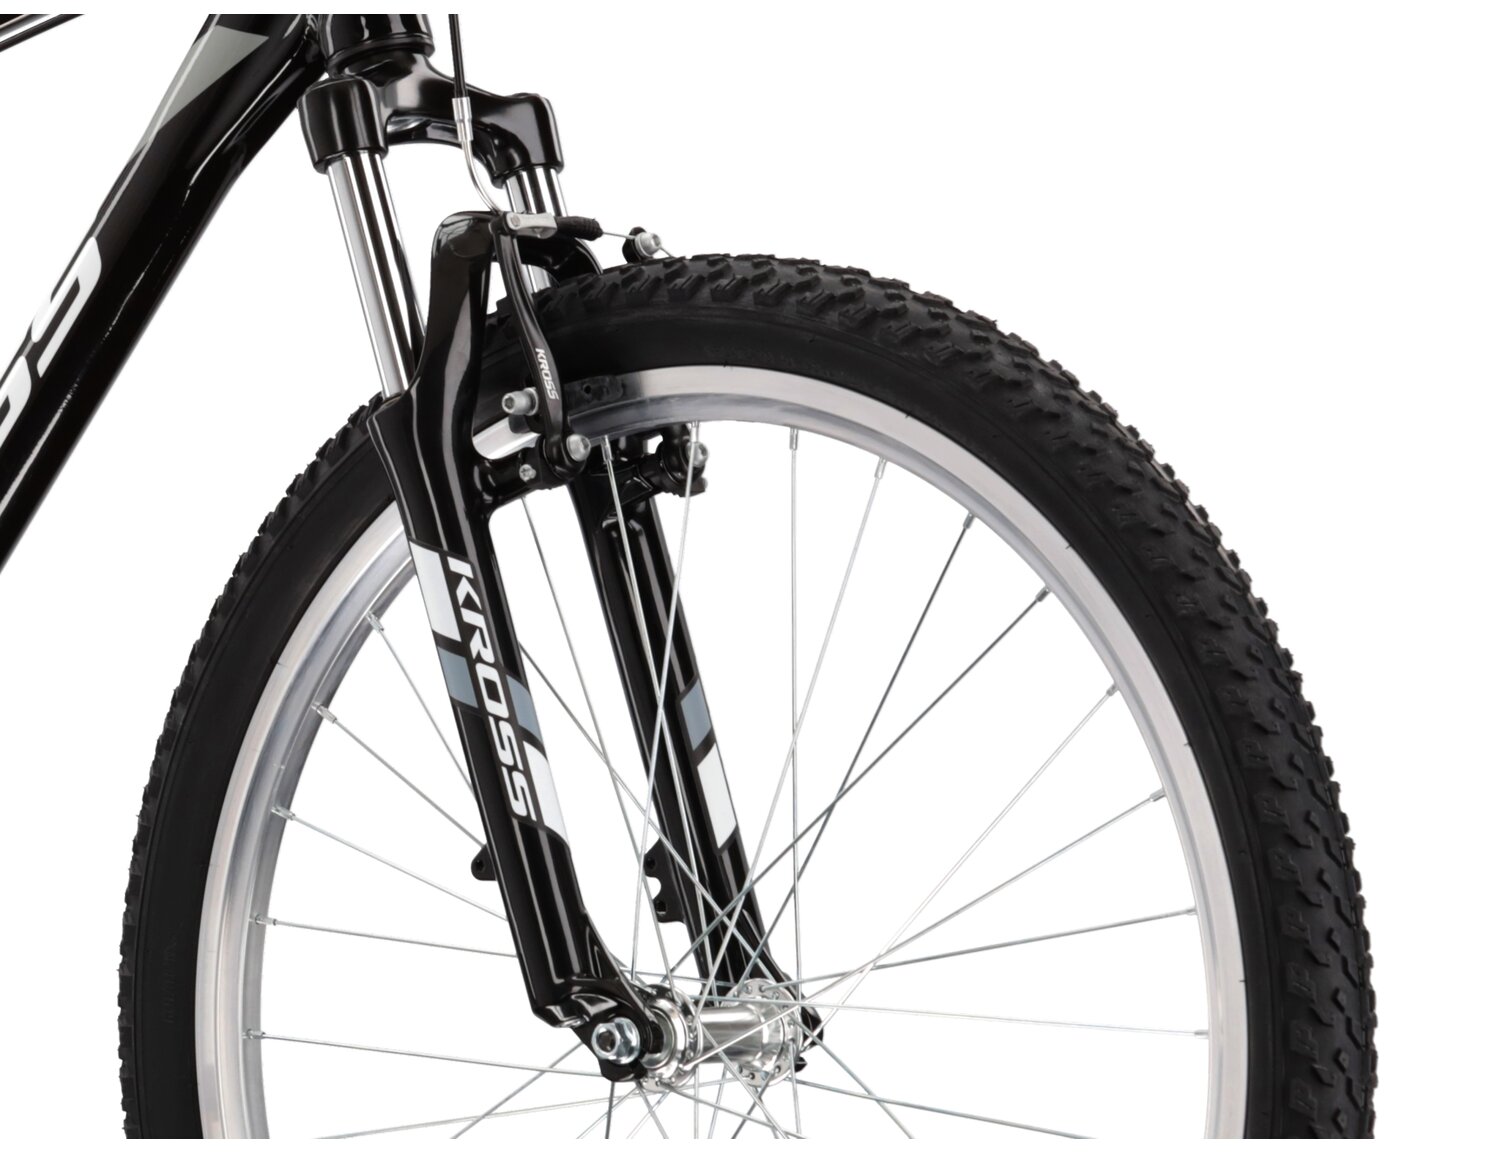  Aluminowa rama, amortyzowany widelec o skoku 80mm oraz opony o szerokości 2,1 cala w rowerze górskim MTB KROSS Hexagon 